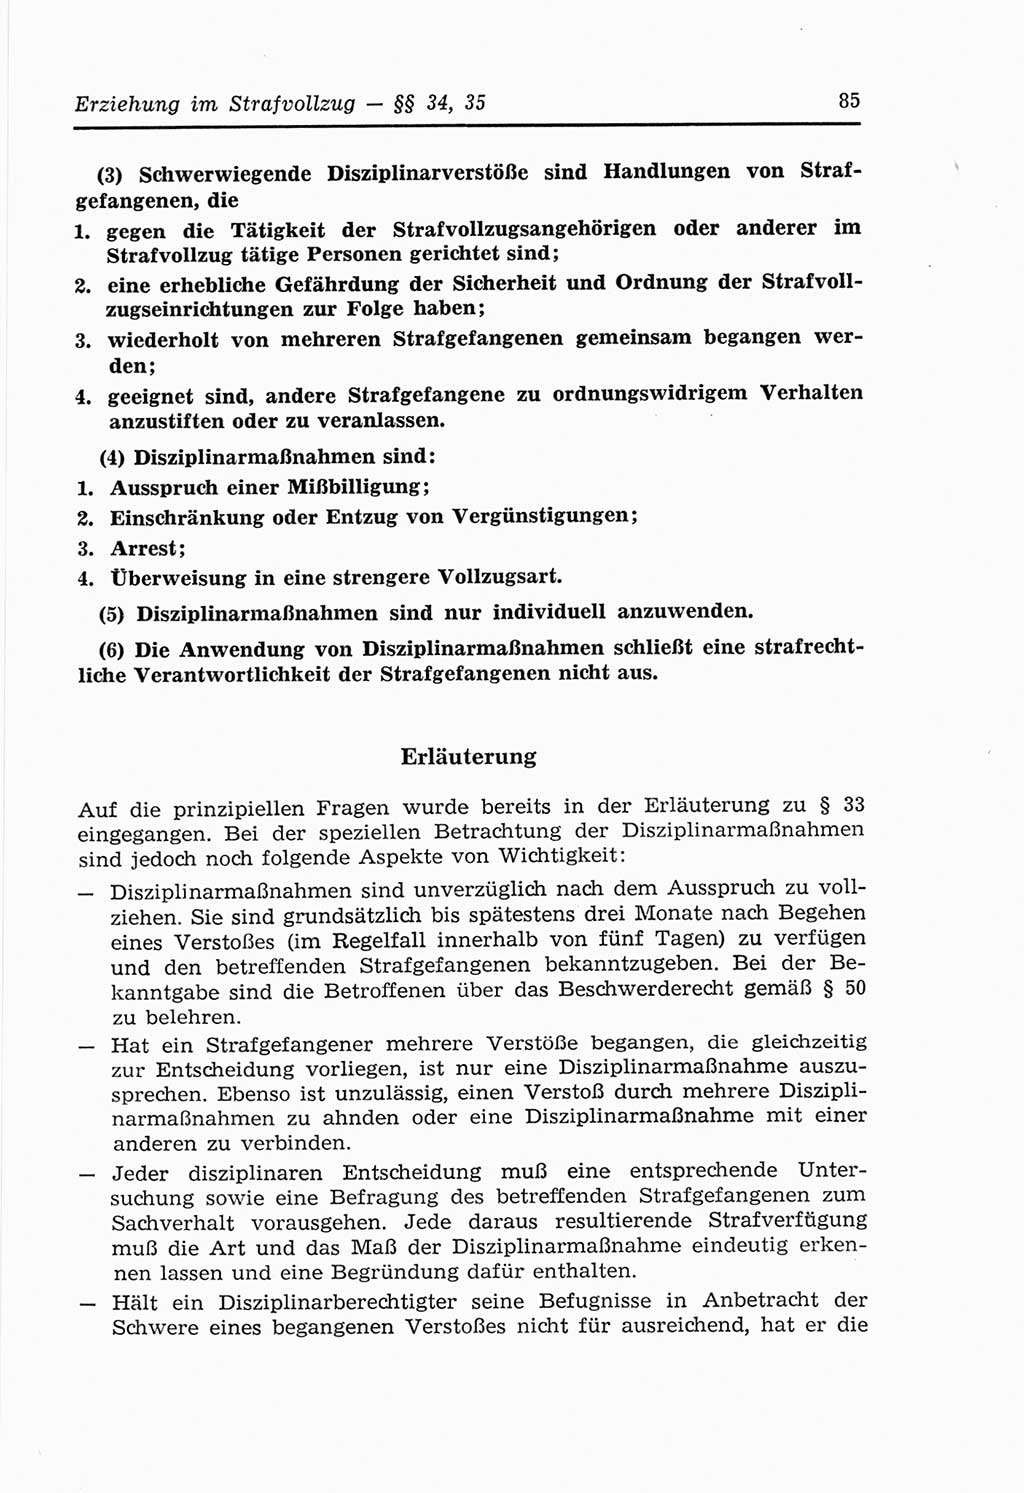 Strafvollzugs- und Wiedereingliederungsgesetz (SVWG) der Deutschen Demokratischen Republik (DDR) 1968, Seite 85 (SVWG DDR 1968, S. 85)